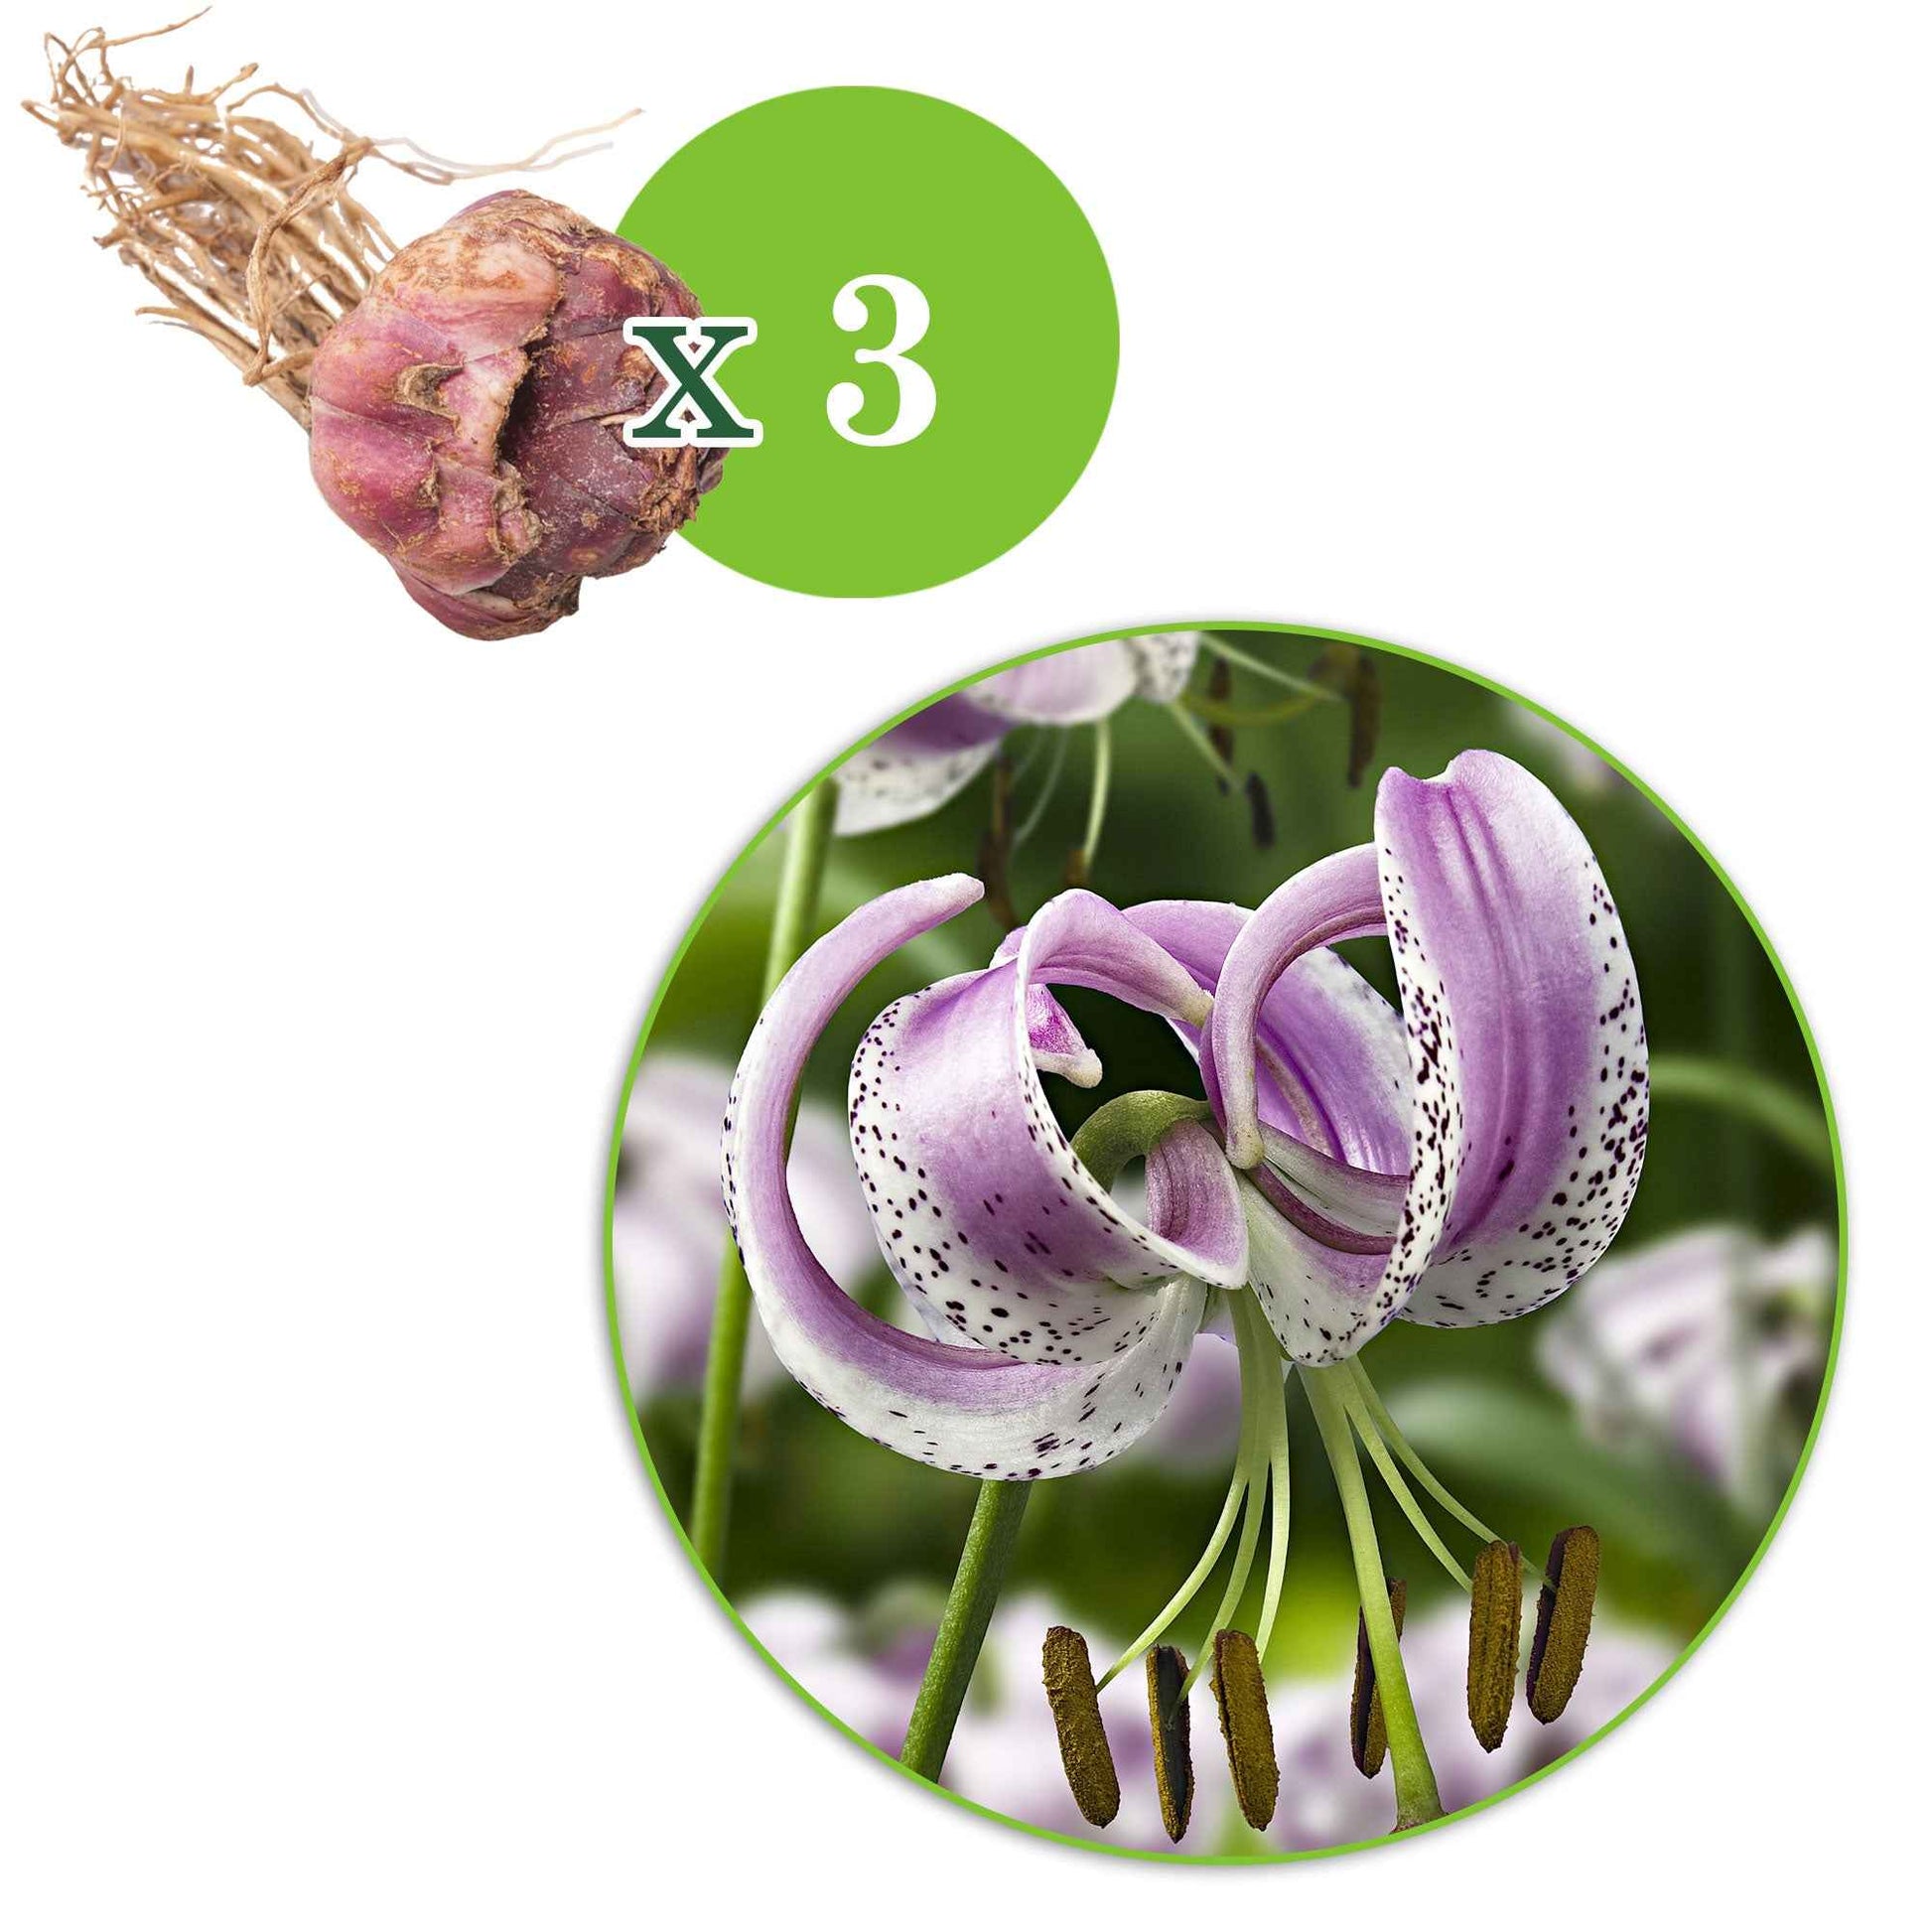 Lis lankongense - 1x emballage (3 bulbes de fleurs) - Bulbes d été - undefined